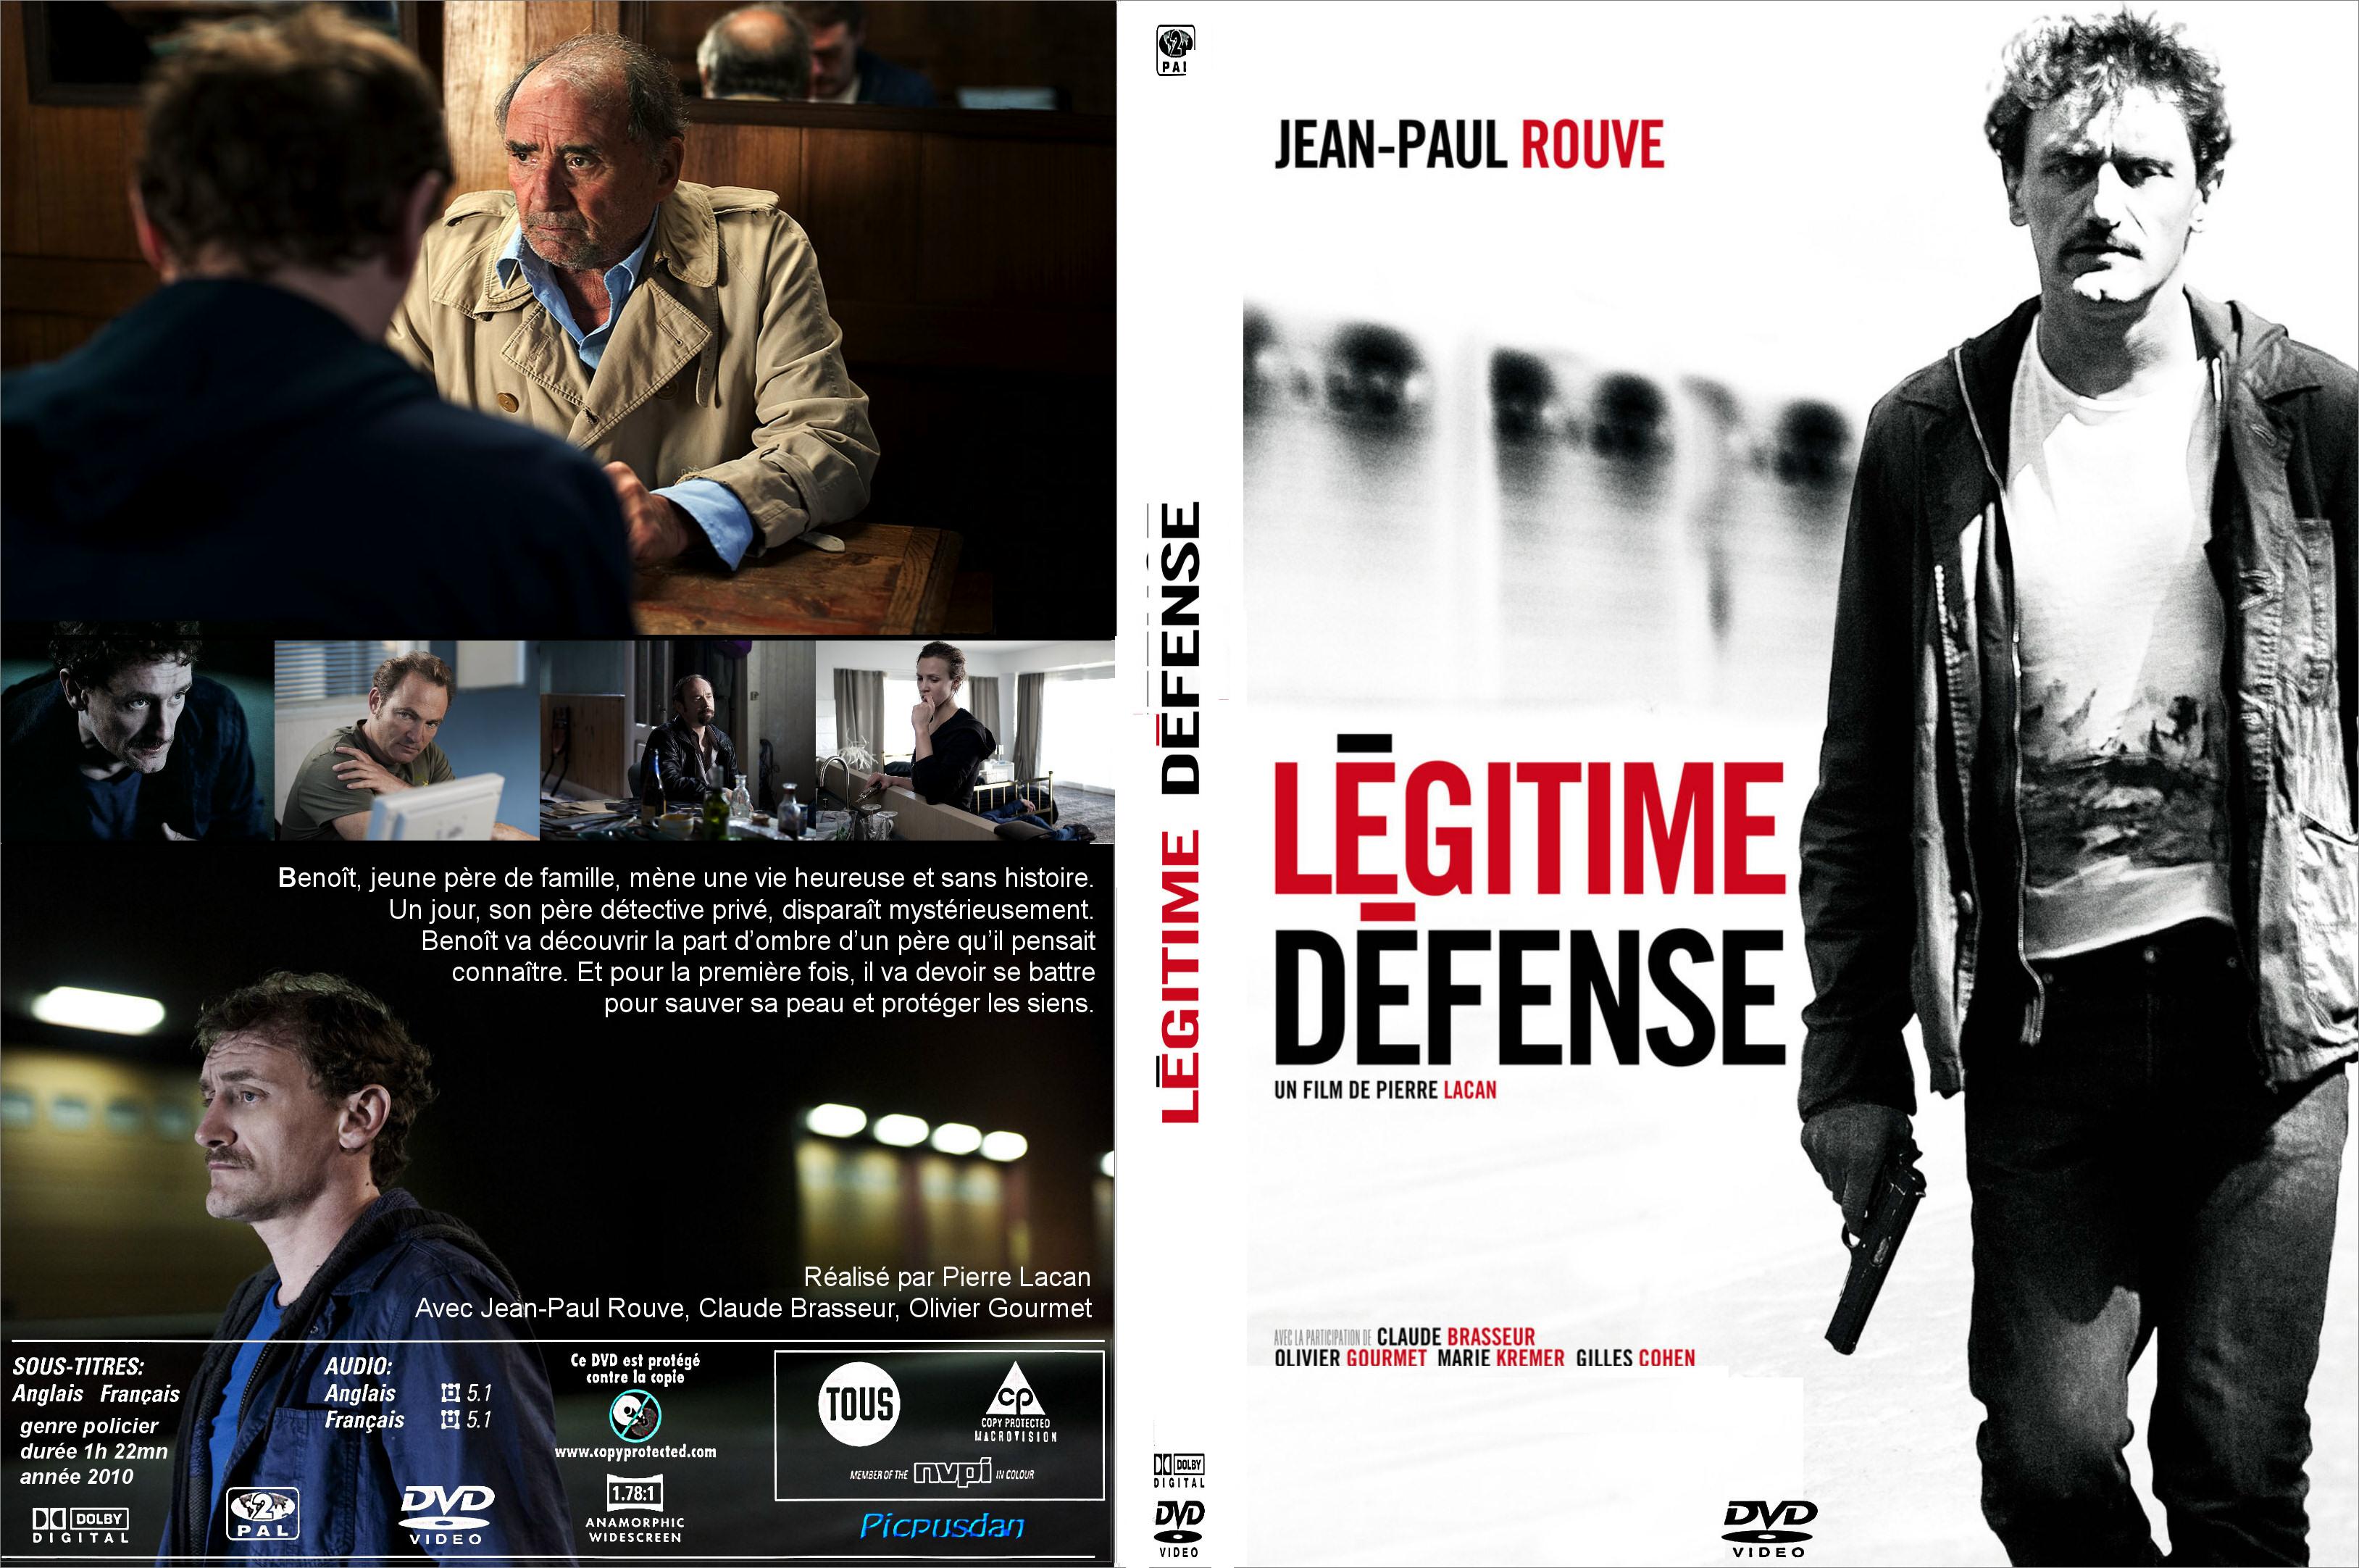 Jaquette DVD Lgitime defense (2010) custom - SLIM